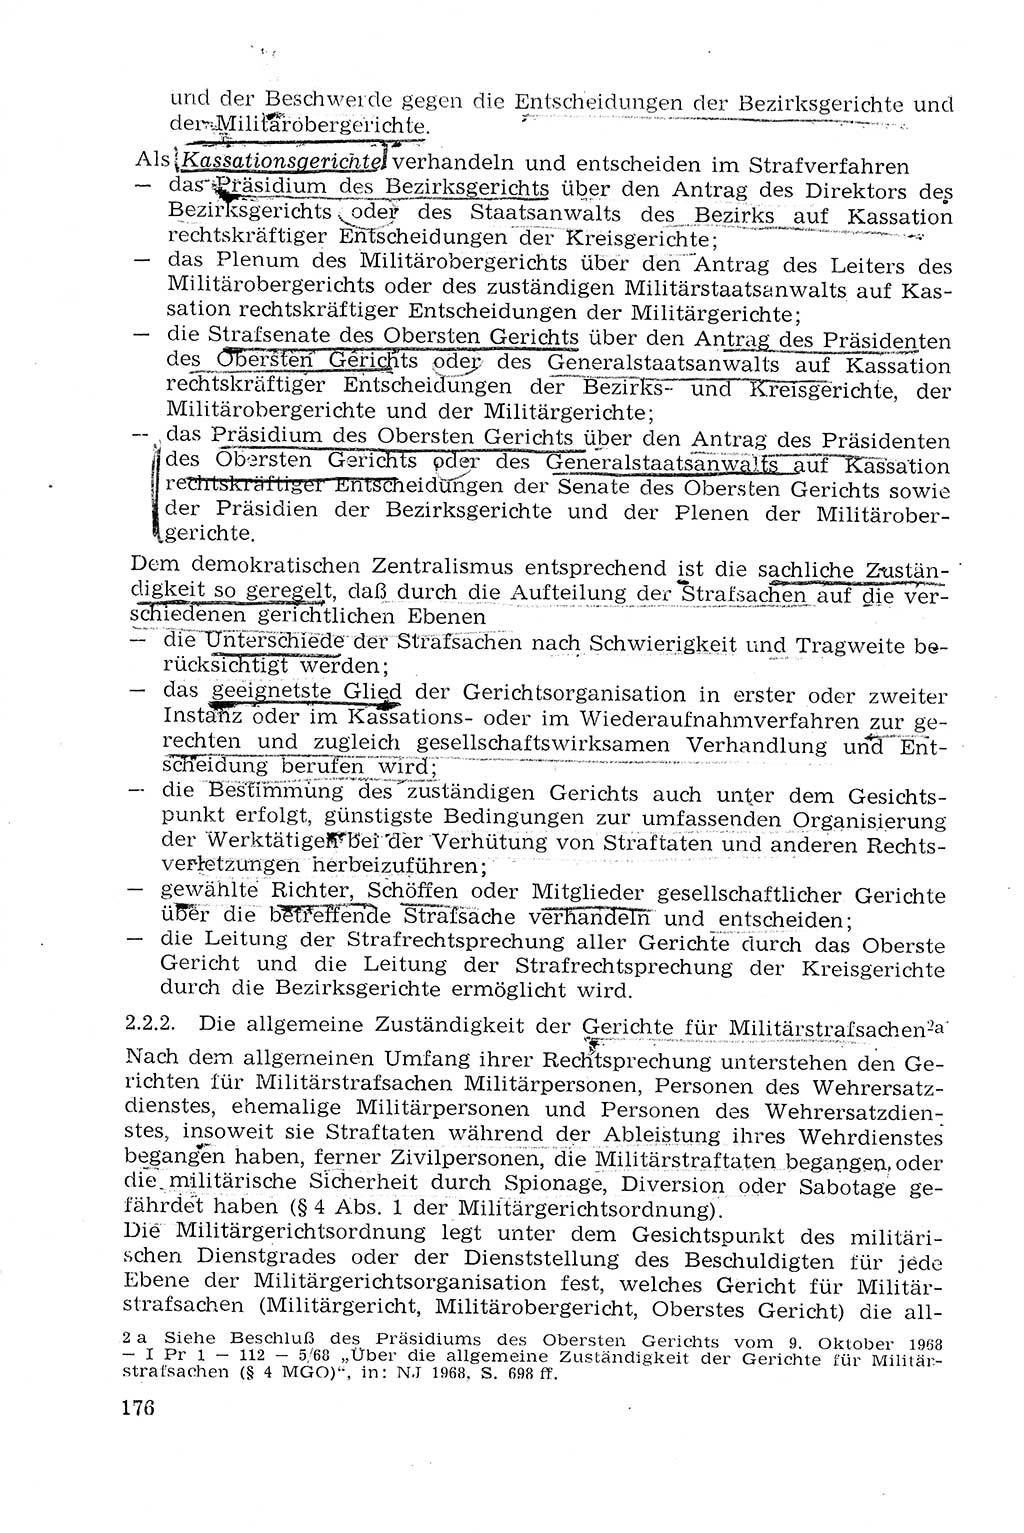 Strafprozeßrecht der DDR (Deutsche Demokratische Republik), Lehrmaterial 1969, Seite 176 (Strafprozeßr. DDR Lehrmat. 1969, S. 176)